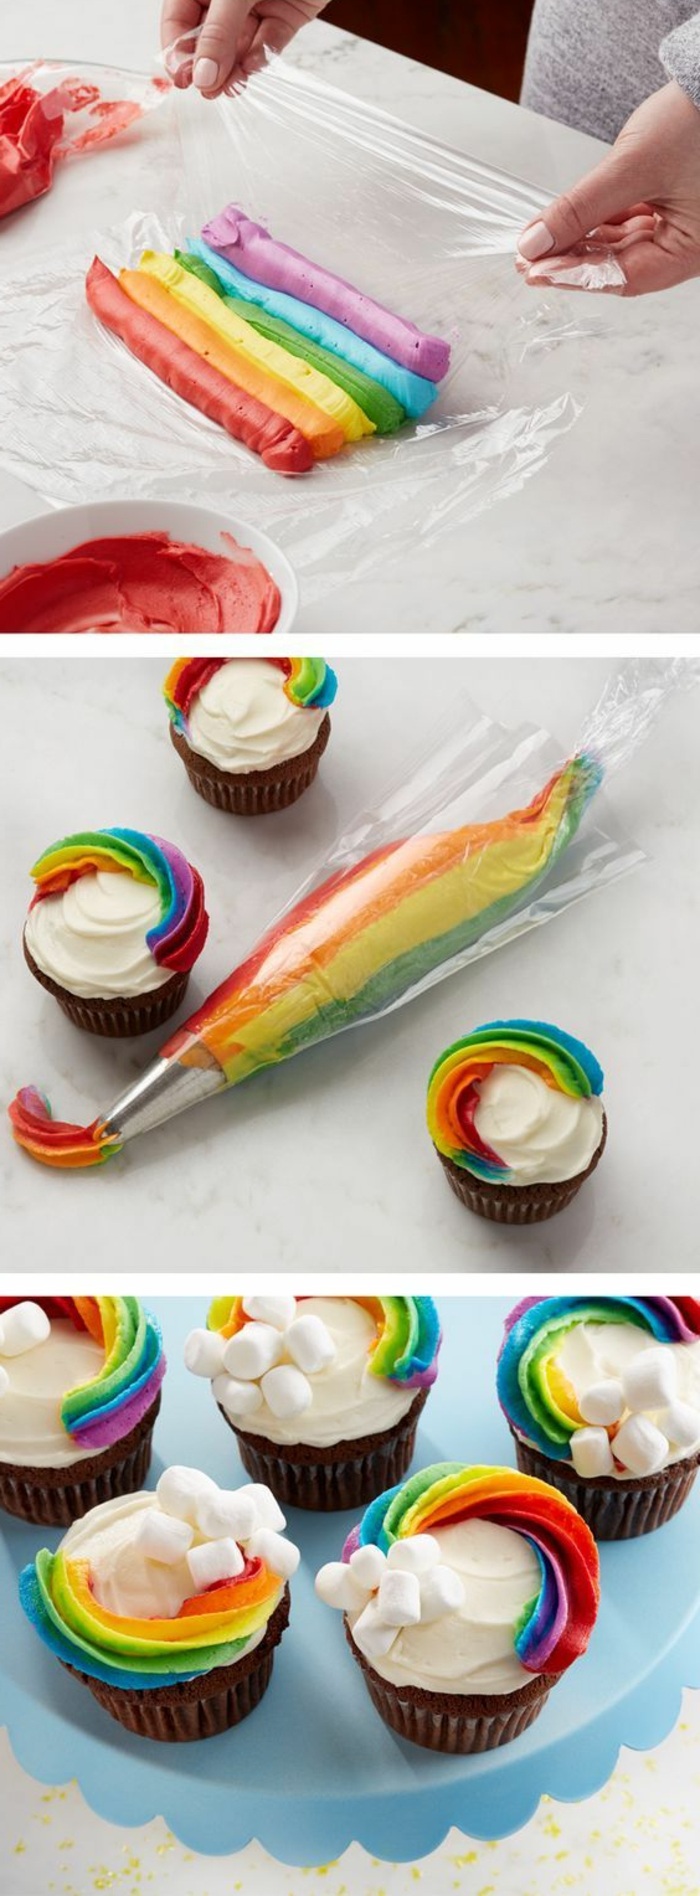 cupcakes díszítik krémmel a szivárvány színeiben